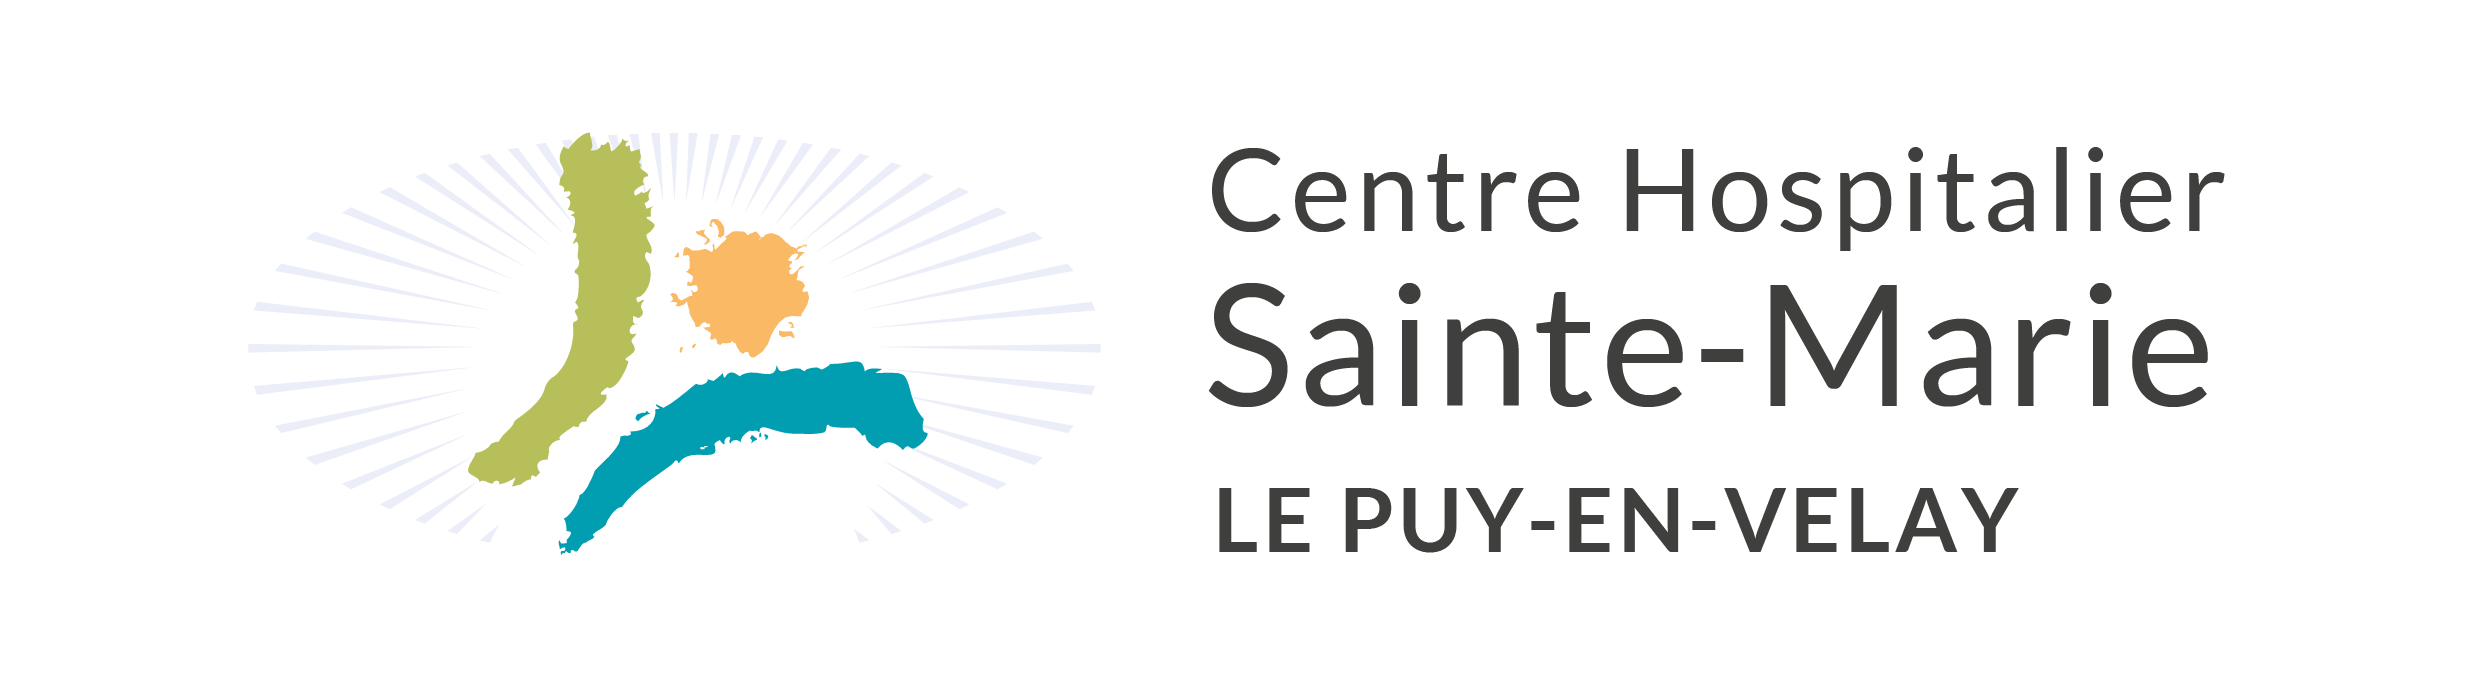 Centre Hospitalier Sainte-Marie Le Puy-en-Velay